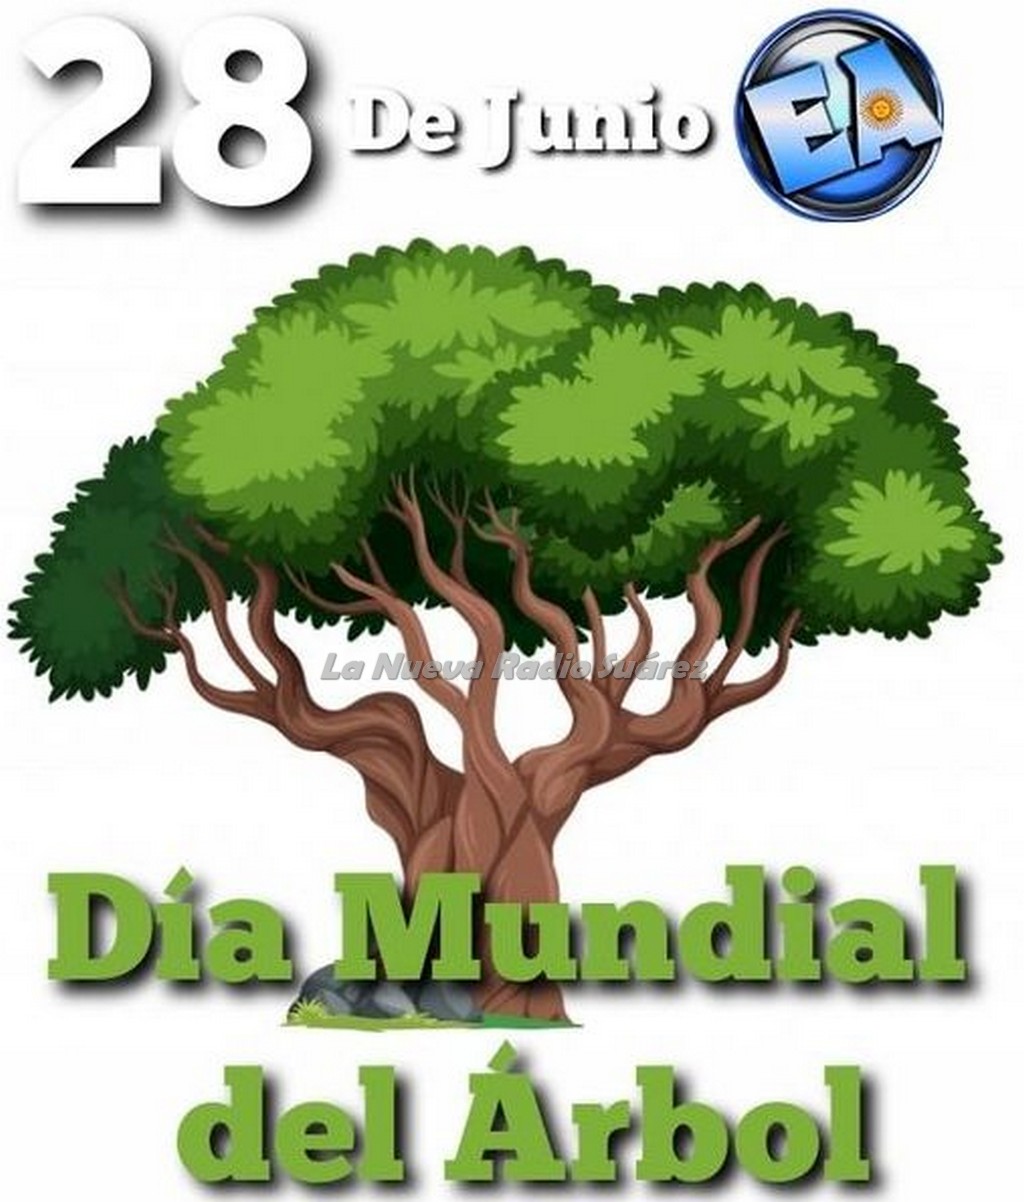 28 de junio día mundial del árbol